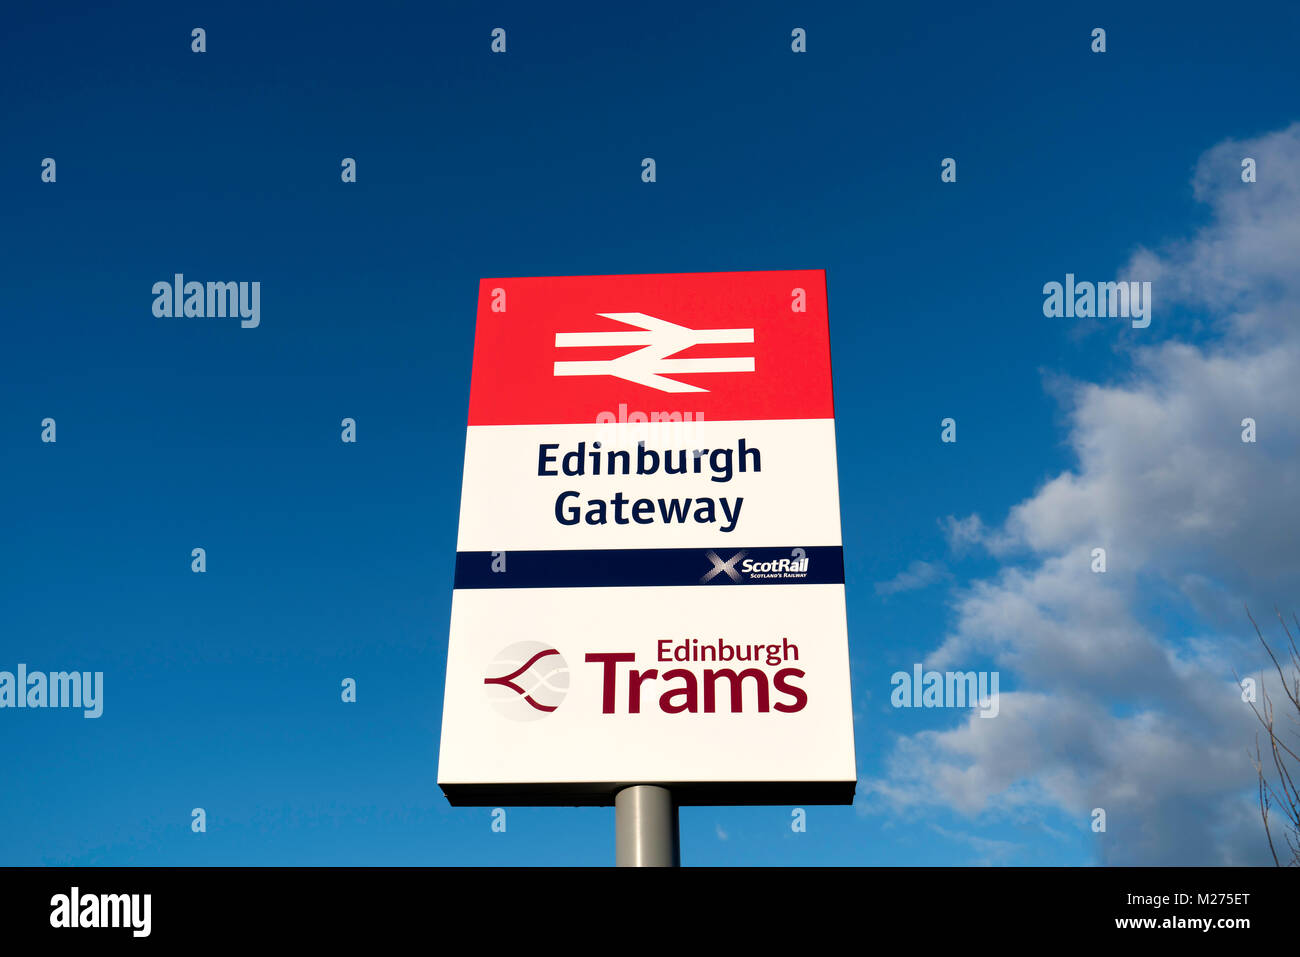 Voir l'inscription à la passerelle d'Édimbourg moderne et la station de tramway qui relie Scotrail voyageurs des trains avec le tramway d'Édimbourg Édimbourg en lien, Sco Banque D'Images